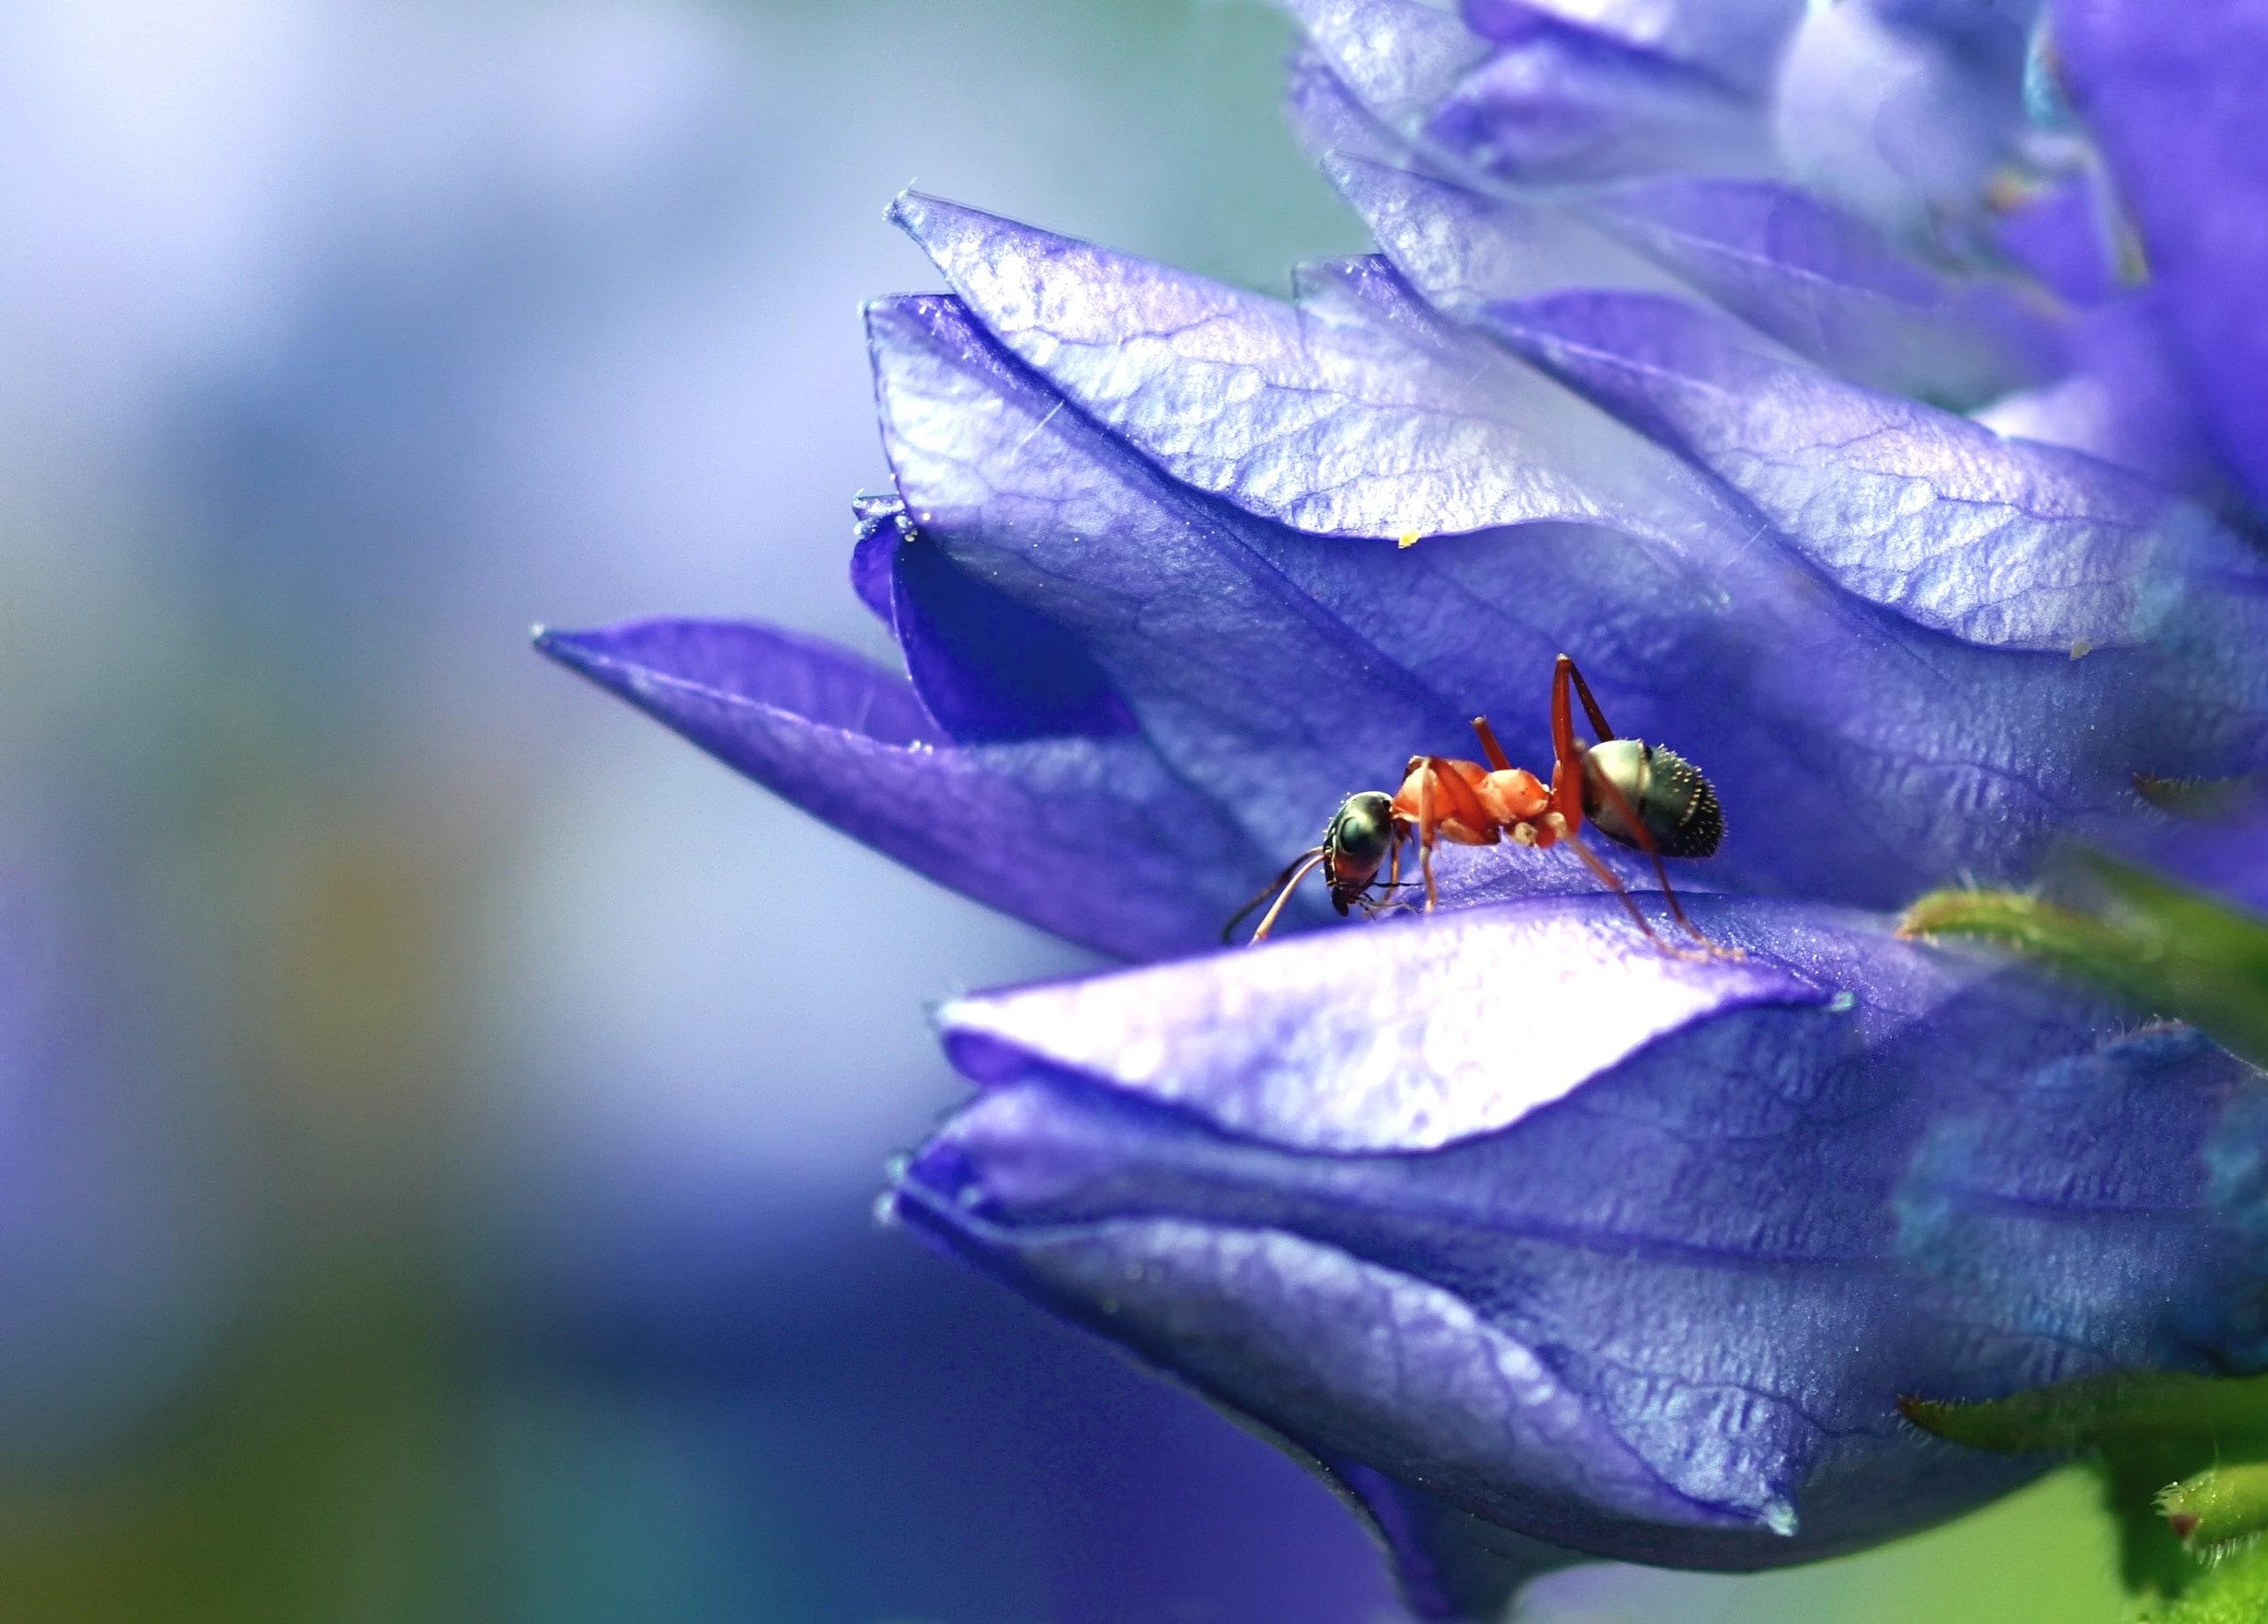 fire ant on purple petaled flower